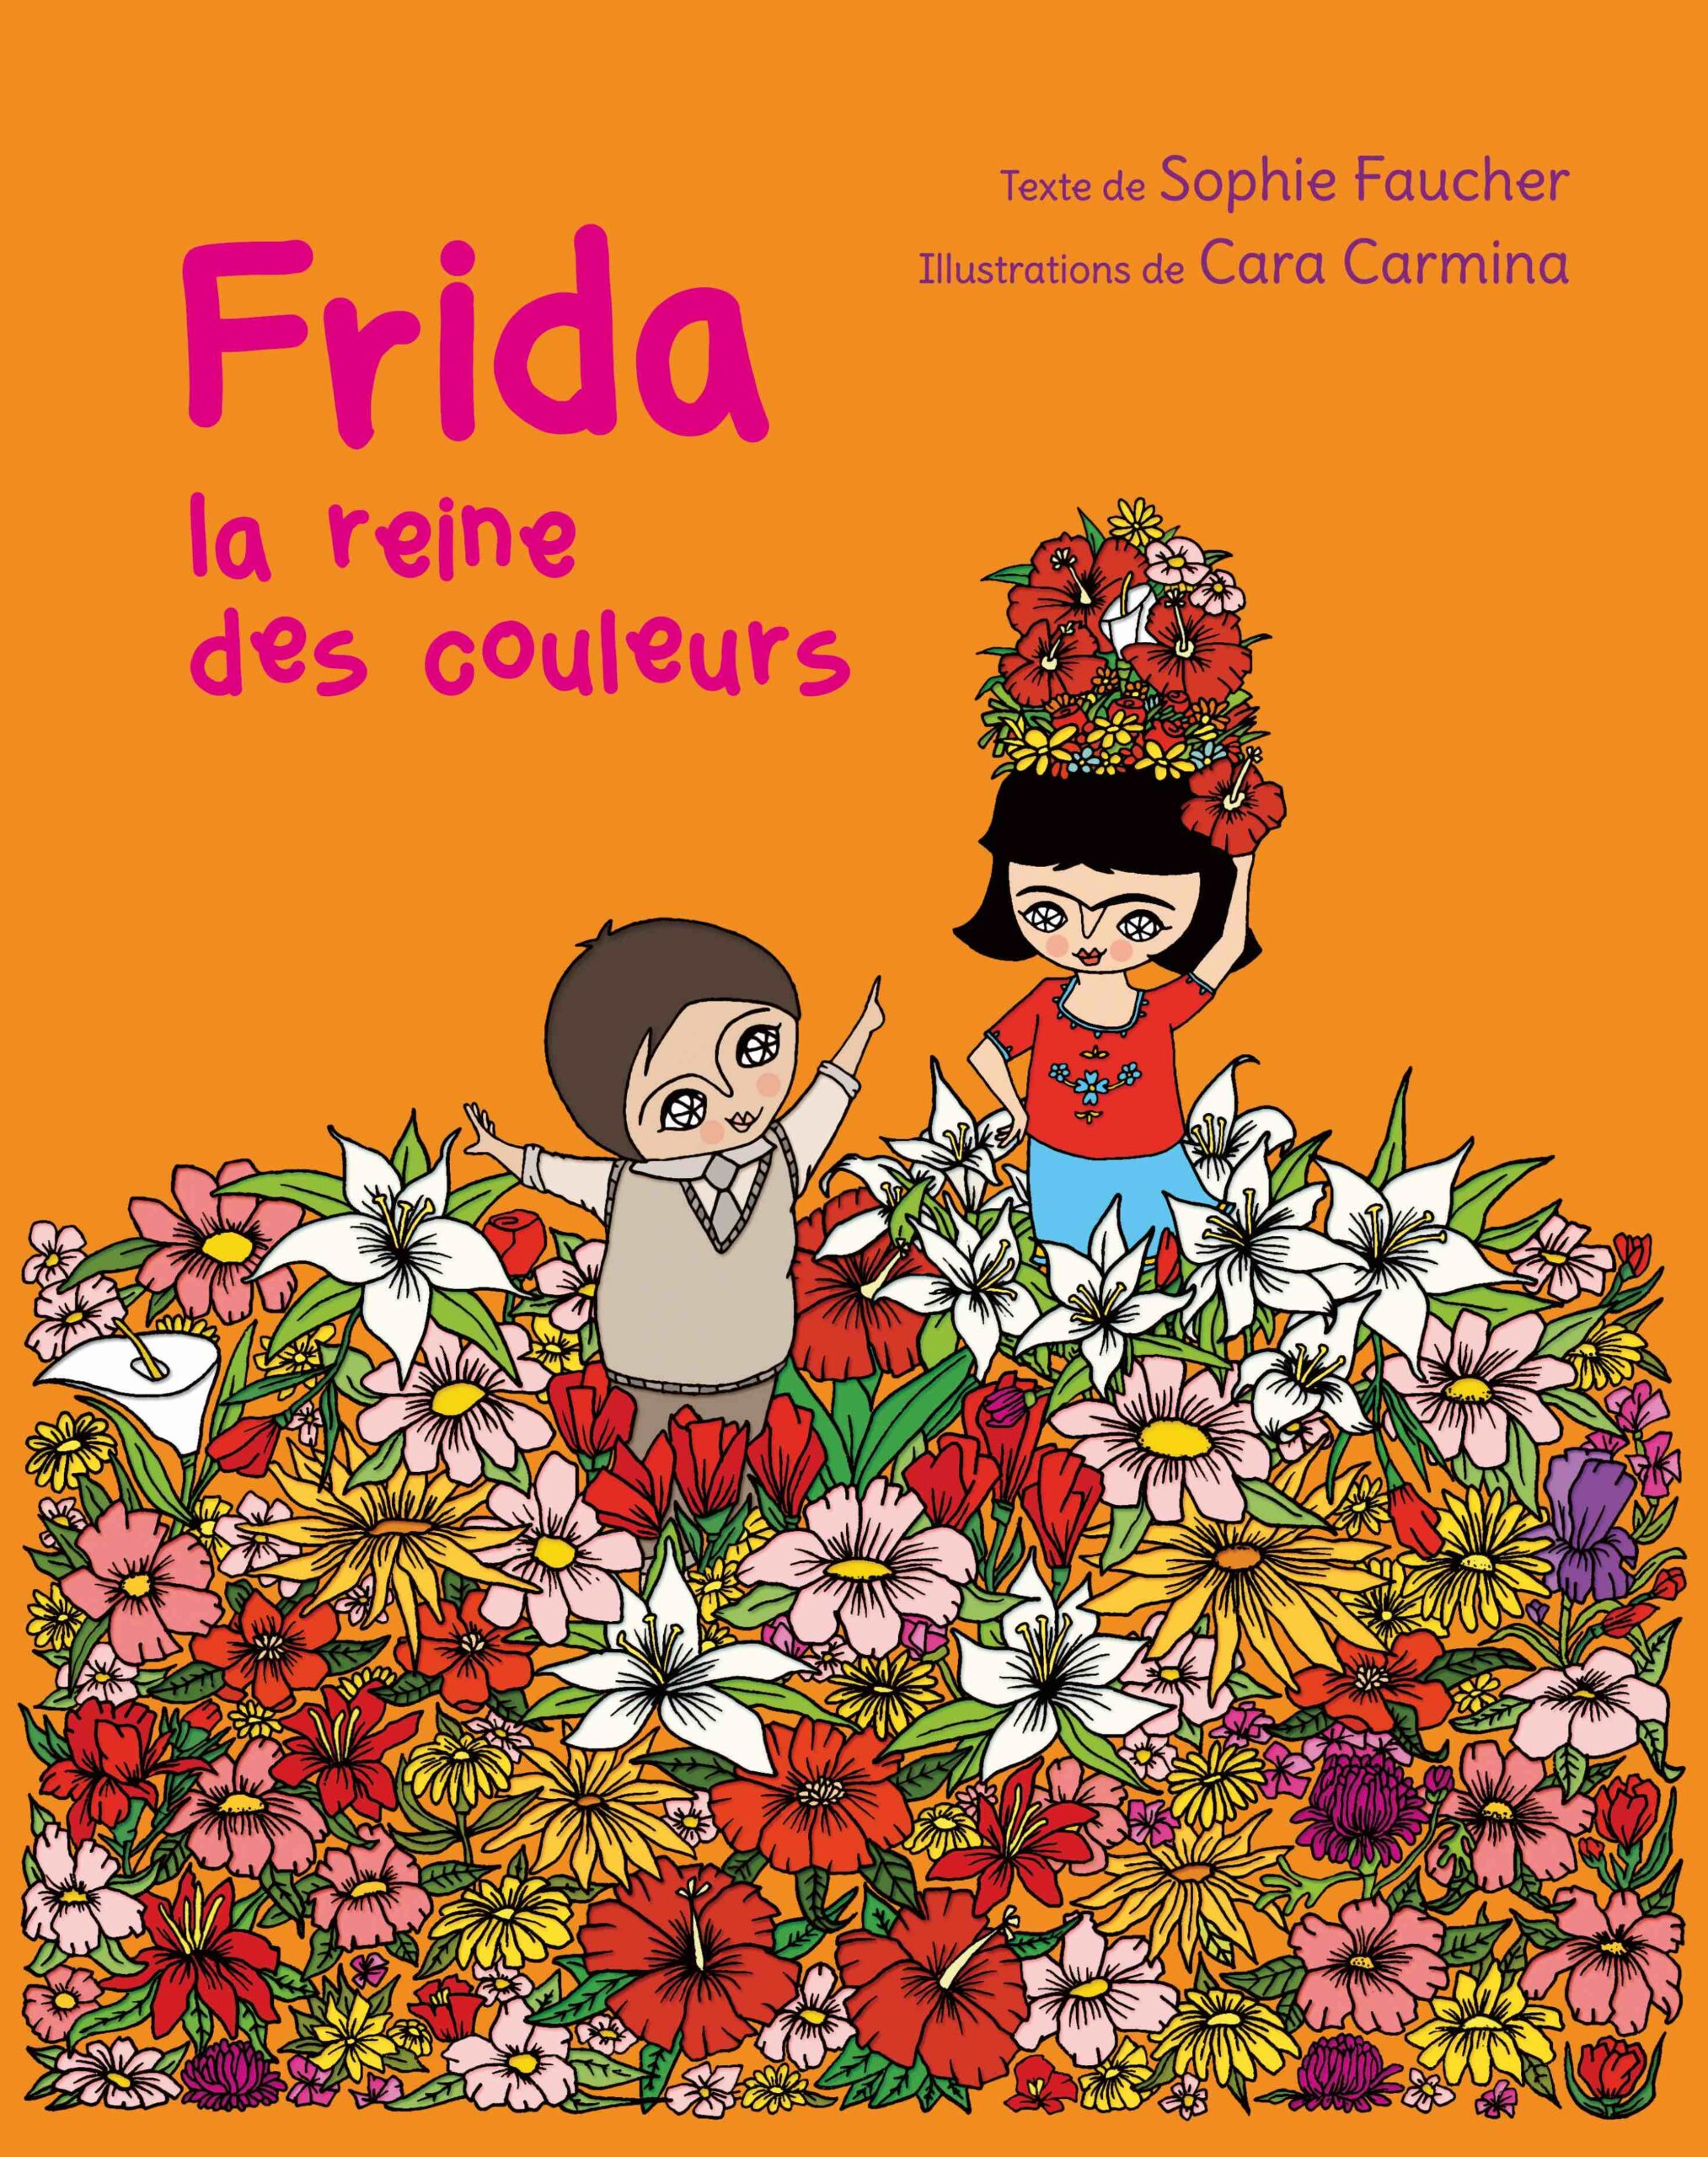 Frida la reine des couleurs Image